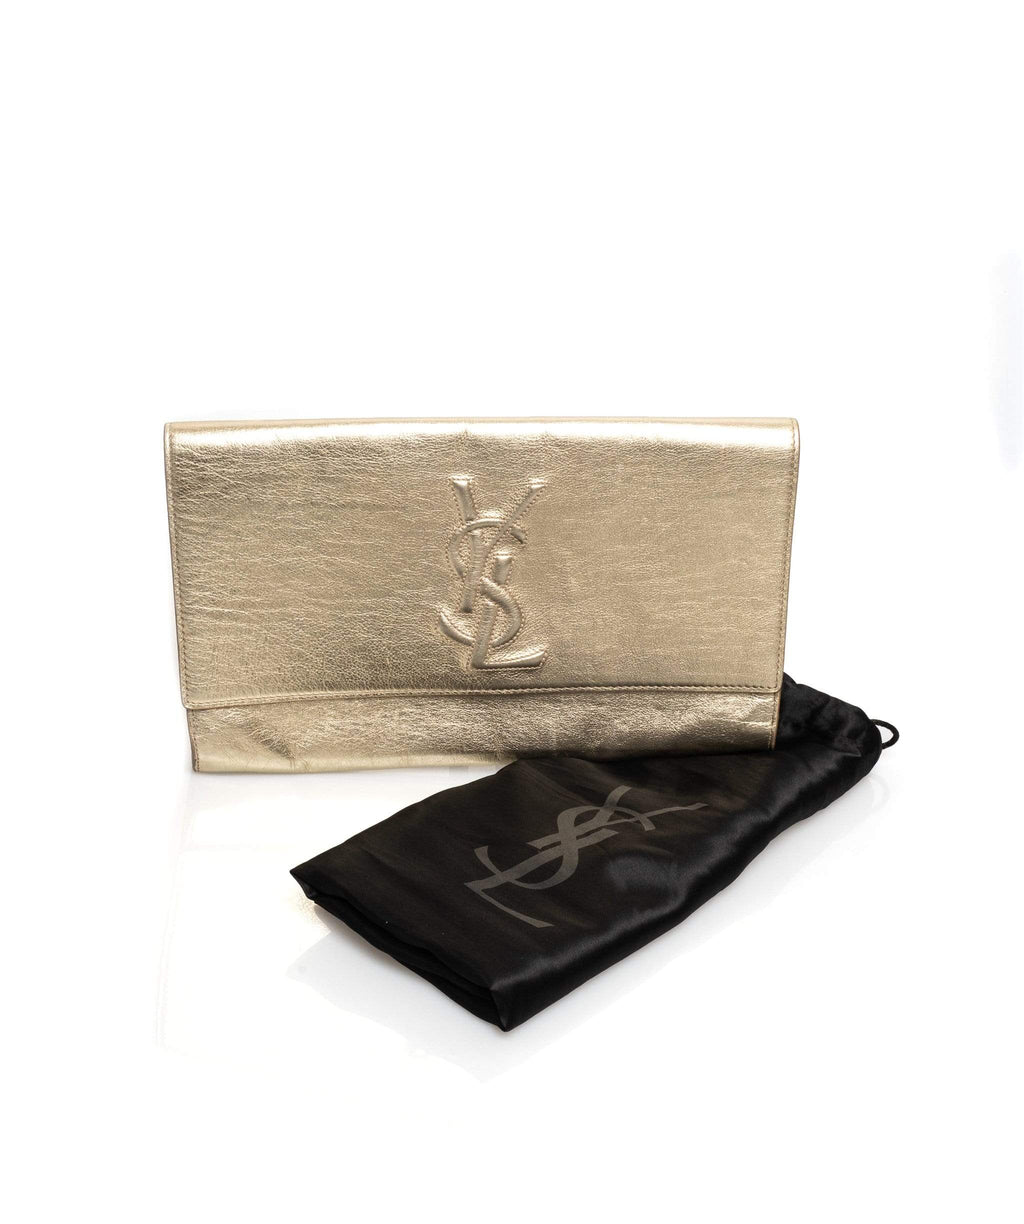 Gold Clutch Bag - corneld.com  Clutch bag, Designer clutch bags, Gold  clutch bag